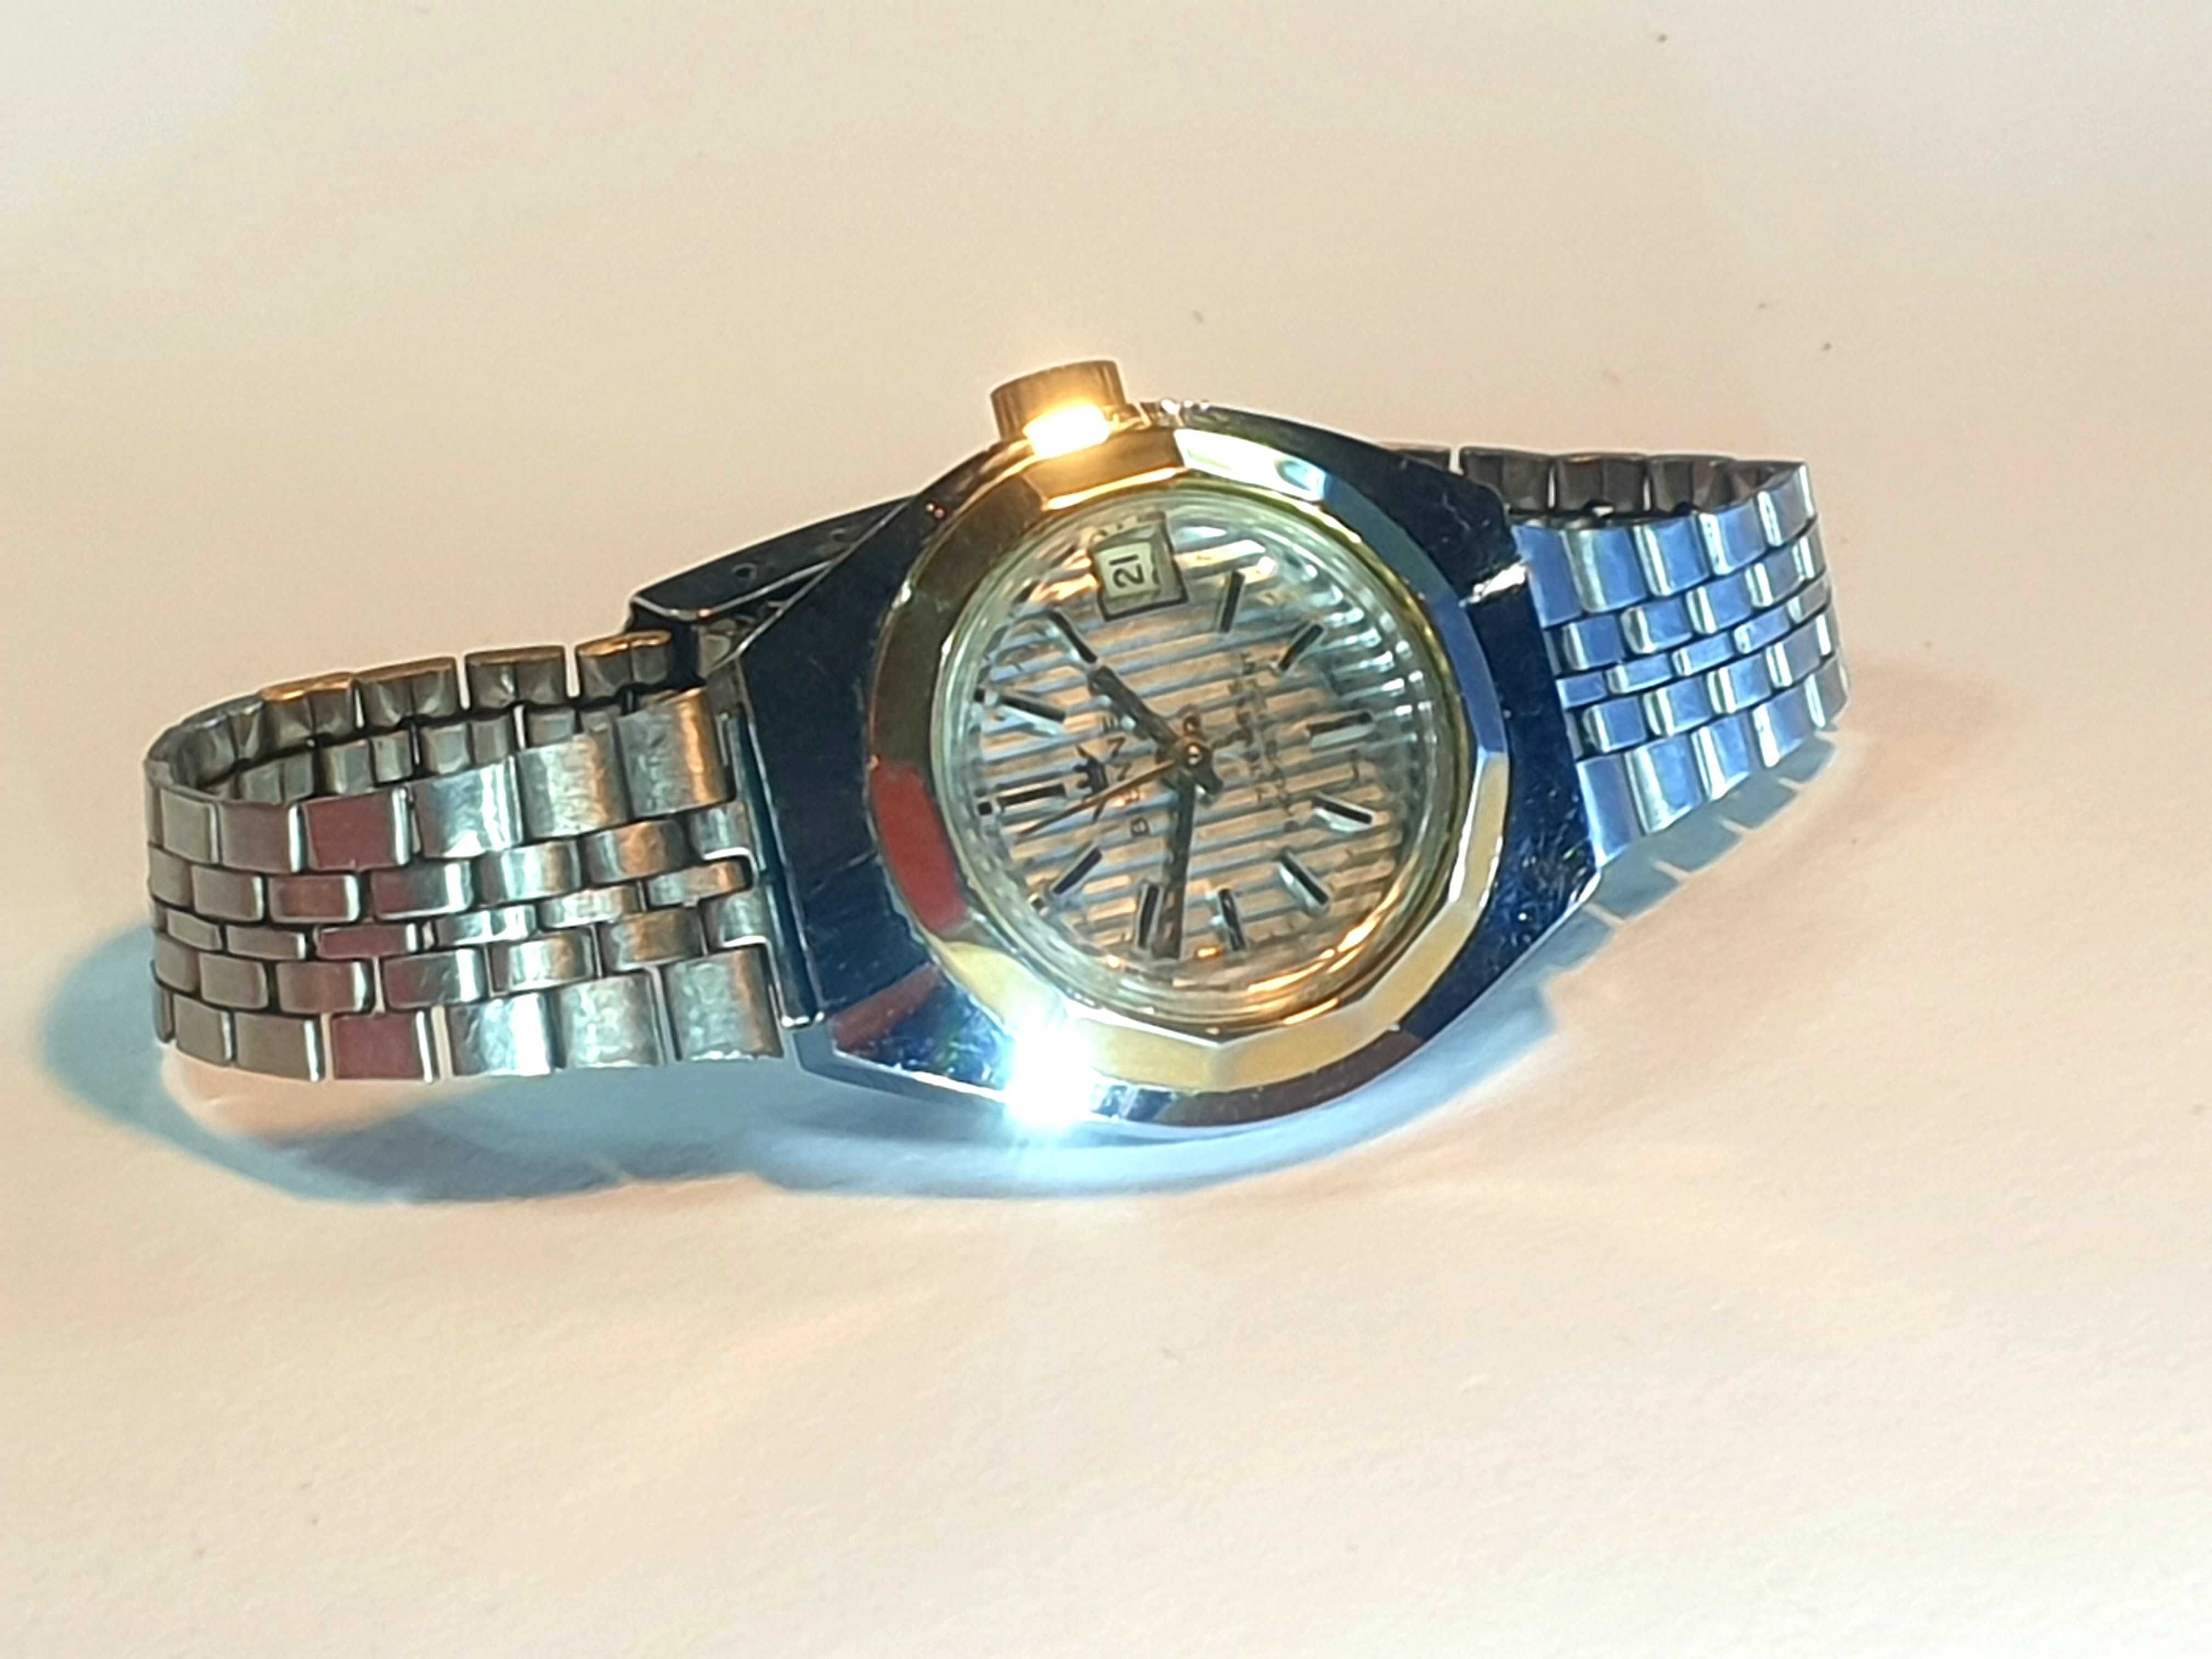 Damski zegarek mechaniczny BIENNE 17 jewels SWISS vintage